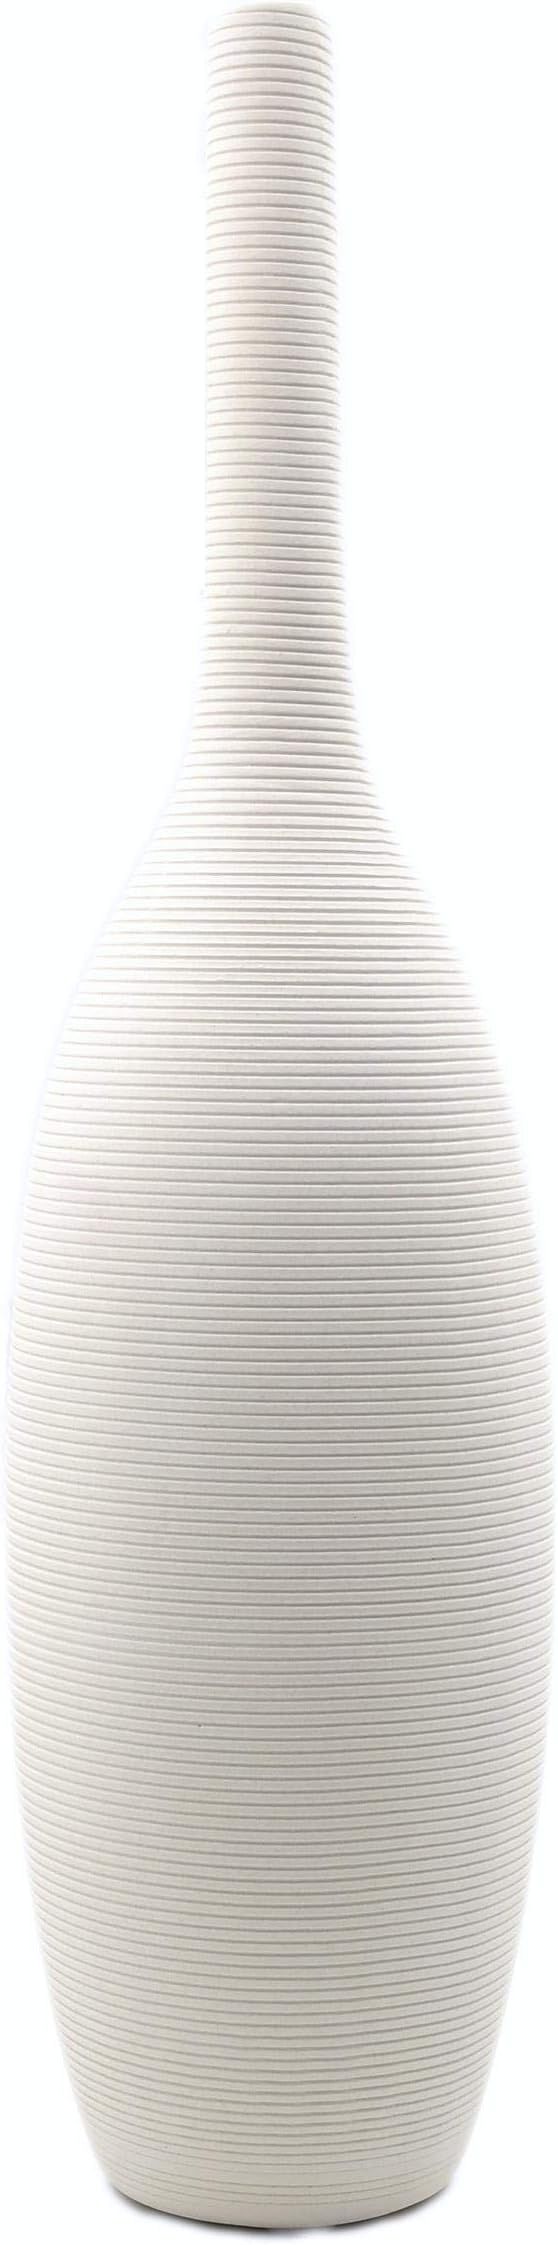 Samawi 14" White Floor Vase Tall Ceramic Vase for Flowers Home Décor Large Modern White Vase Dec... | Amazon (US)